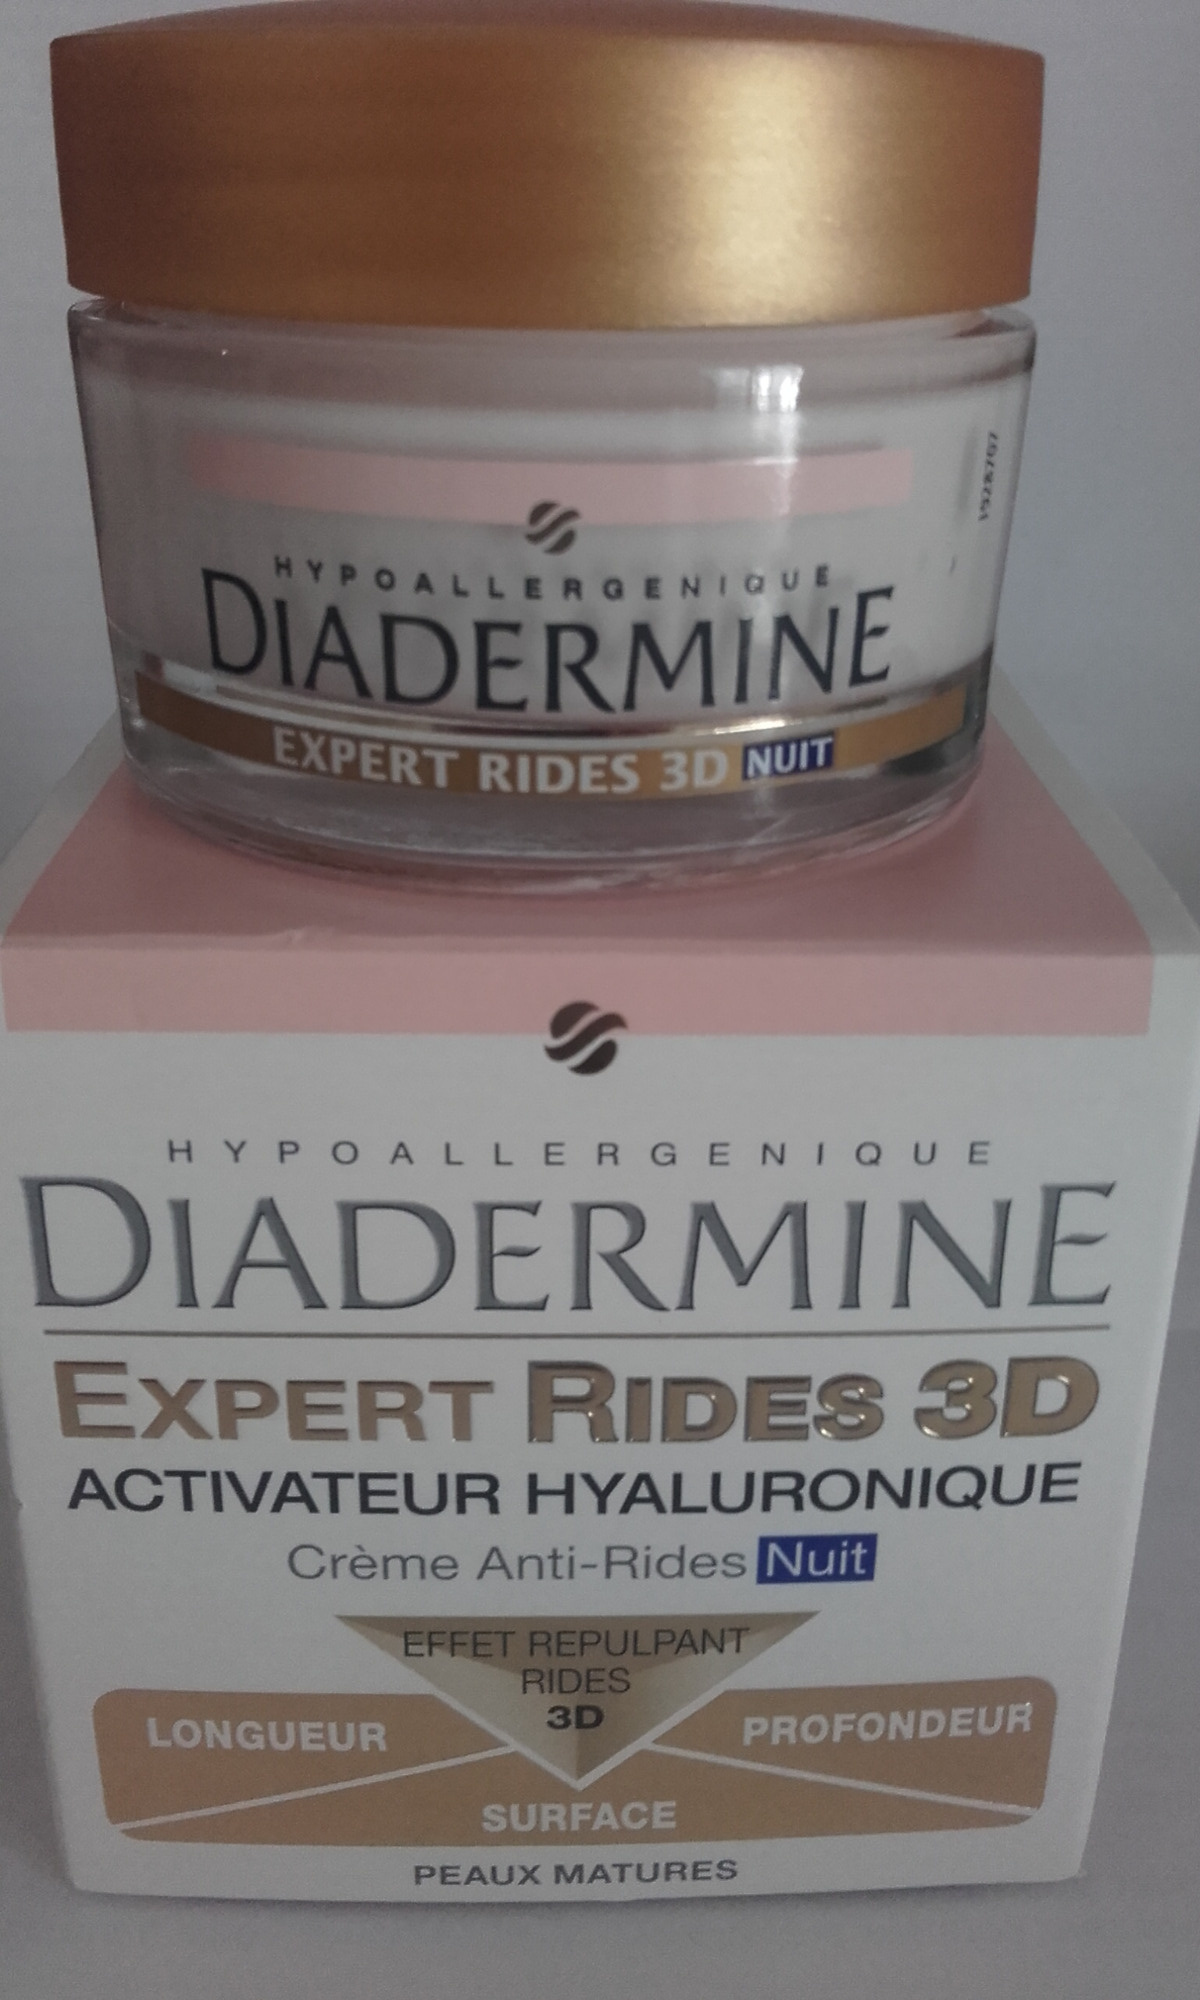 Expert Rides 3D Activateur Hyaluronique Crème Anti-rides Nuit - Product - fr